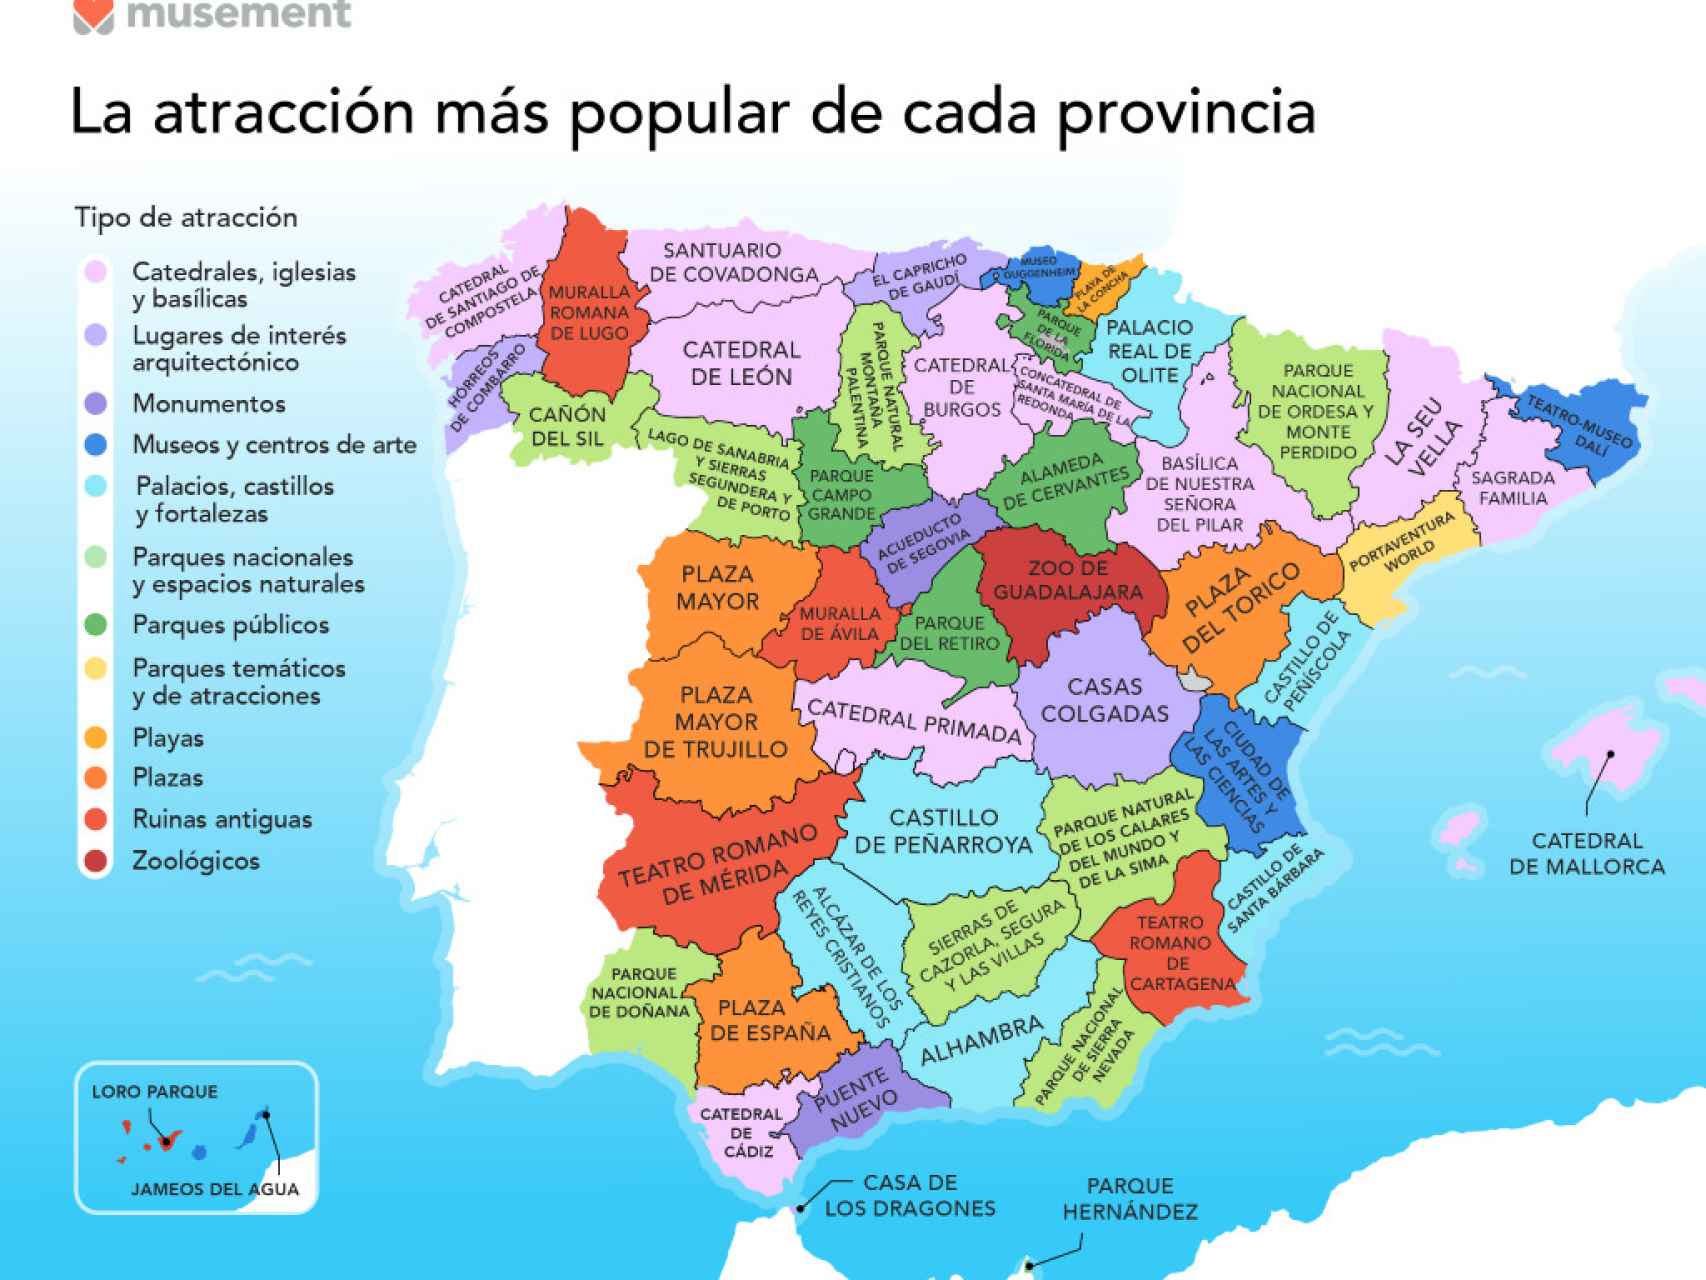 Las atracciones y monumentos más populares de cada provincia de España